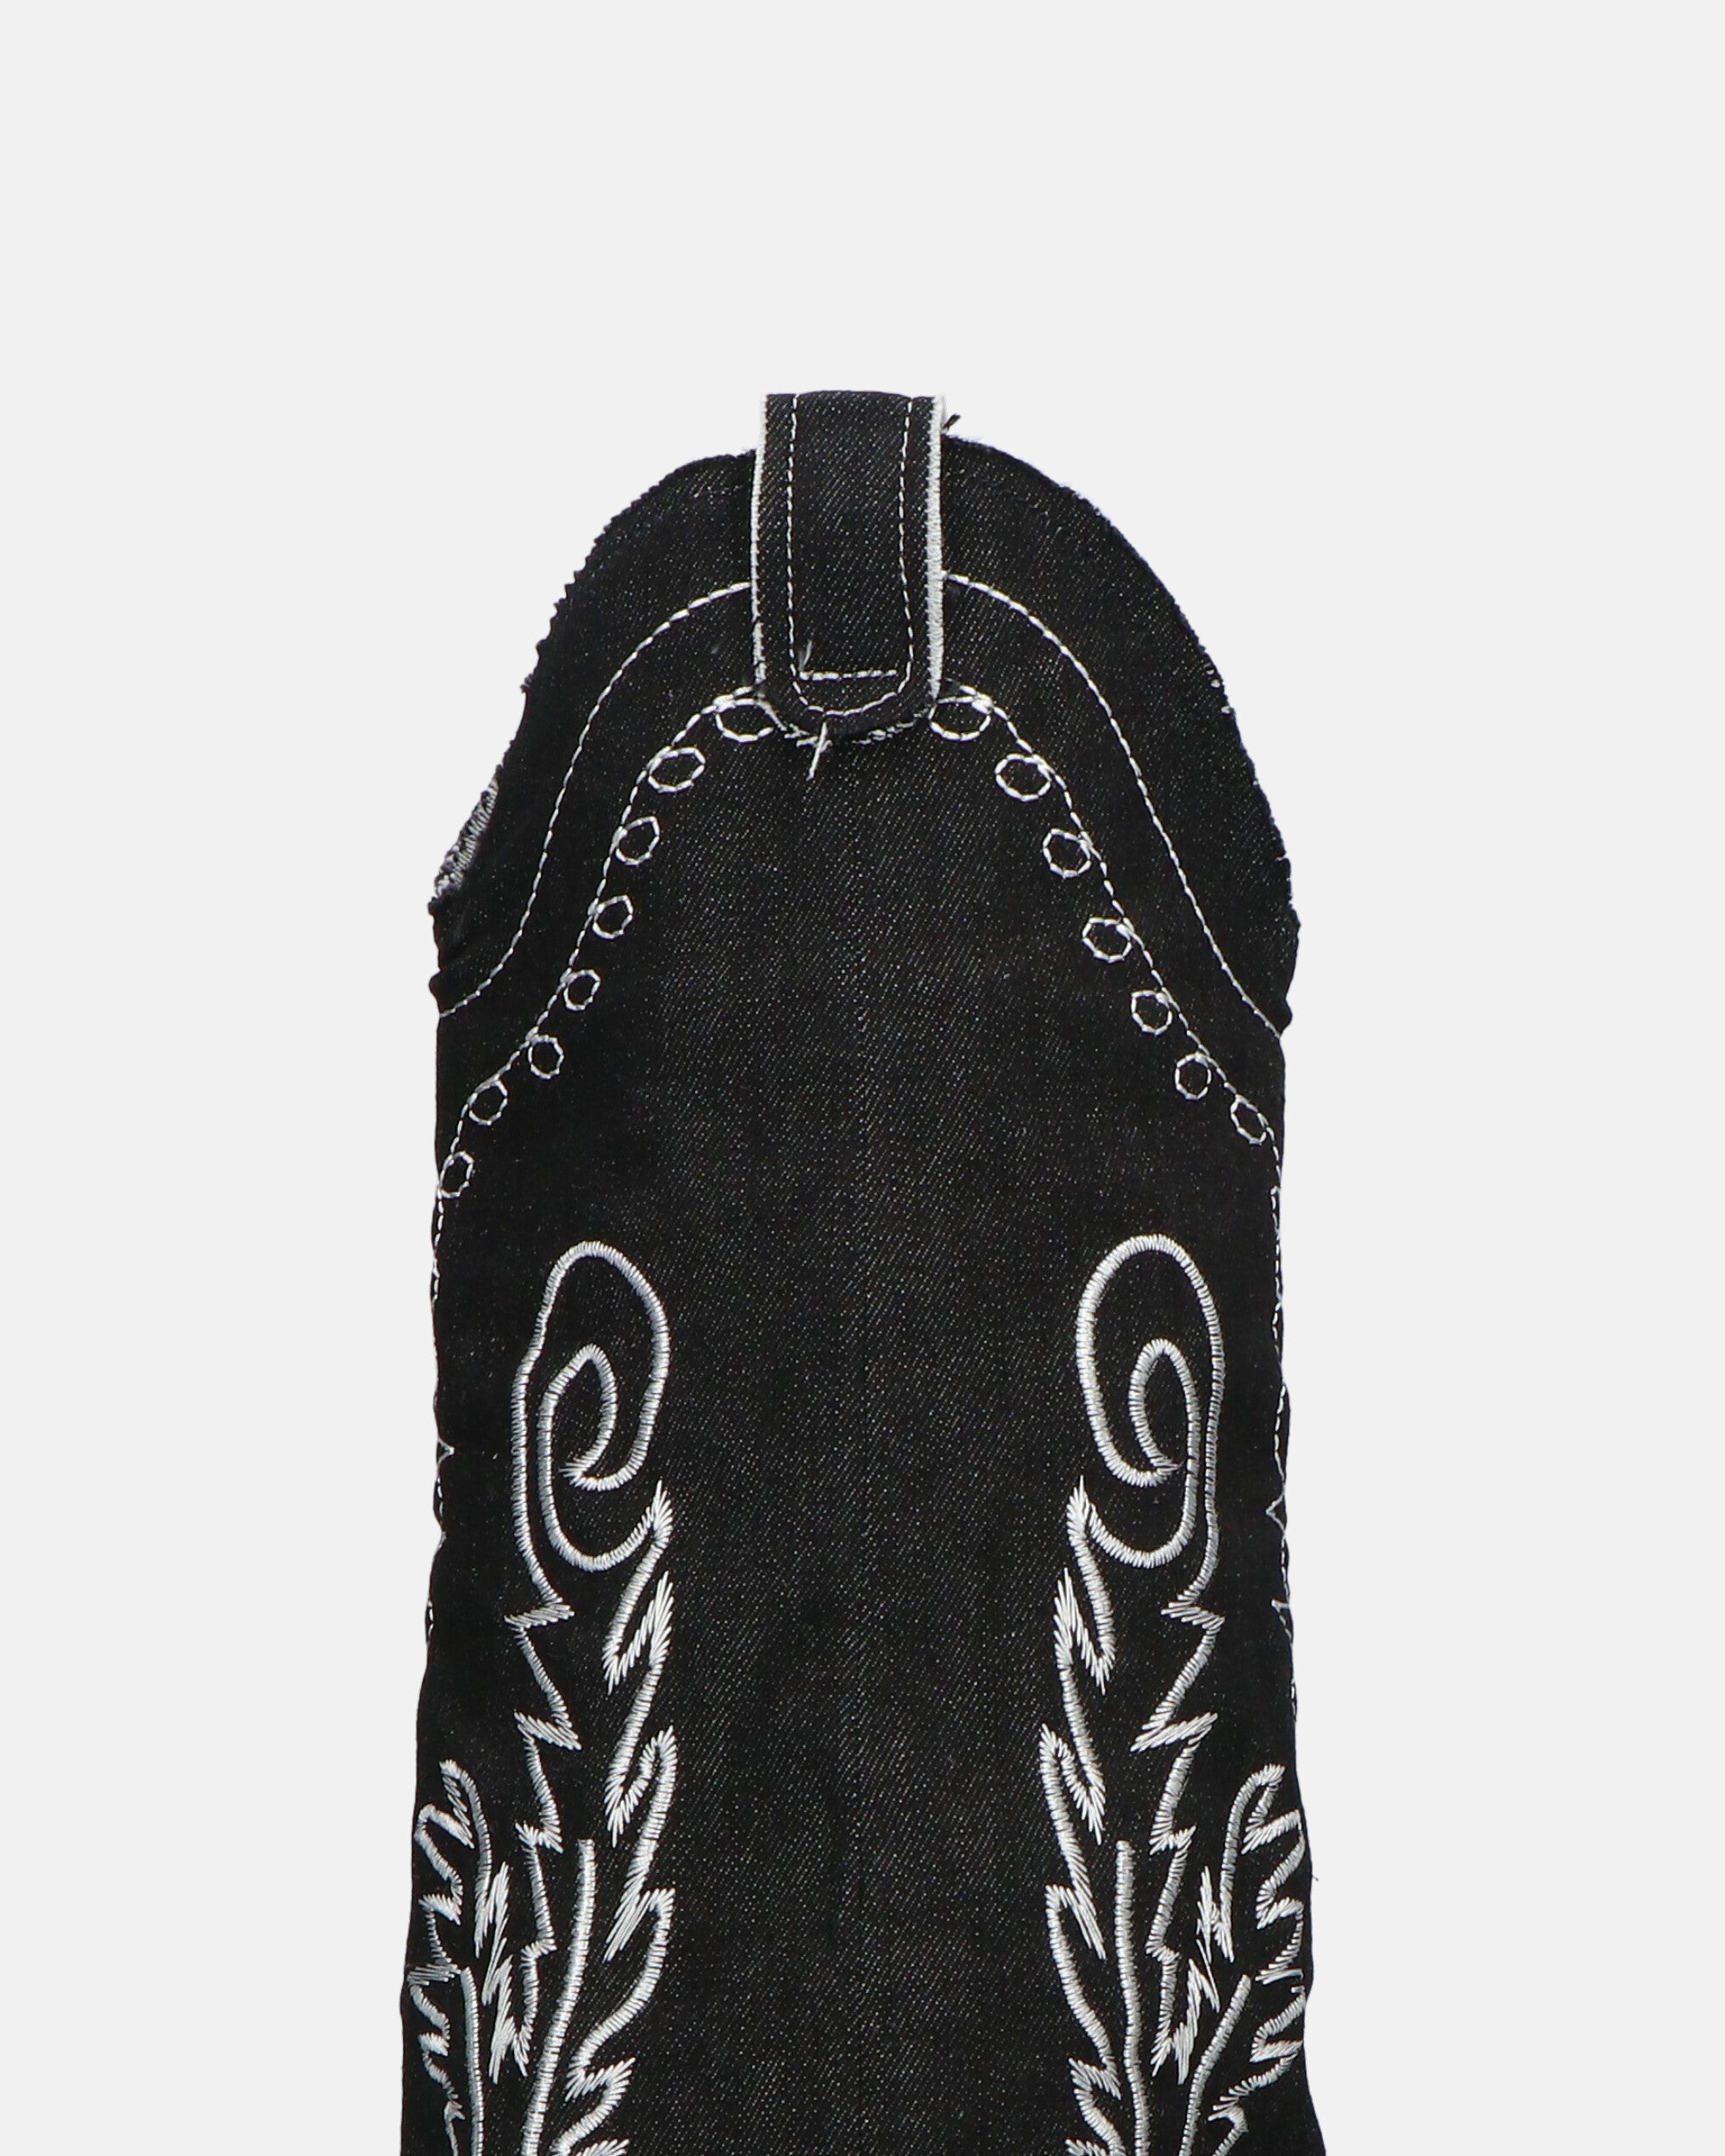 FRANCYS - stivali camperos alti in tessuto denim nero con ricami